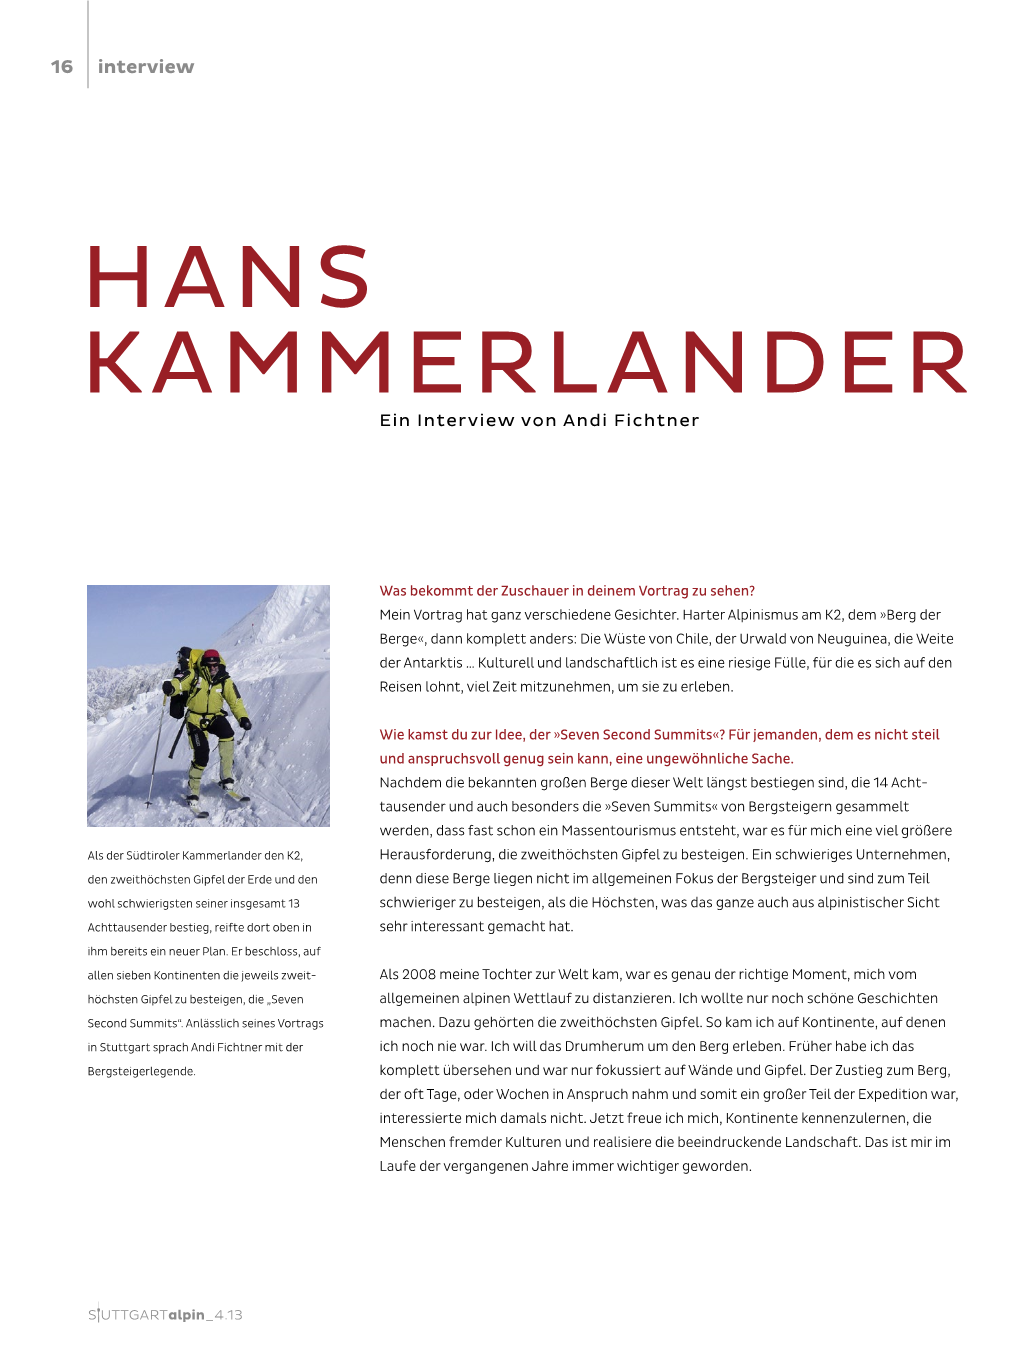 HANS KAMMERLANDER Ein Interview Von Andi Fichtner